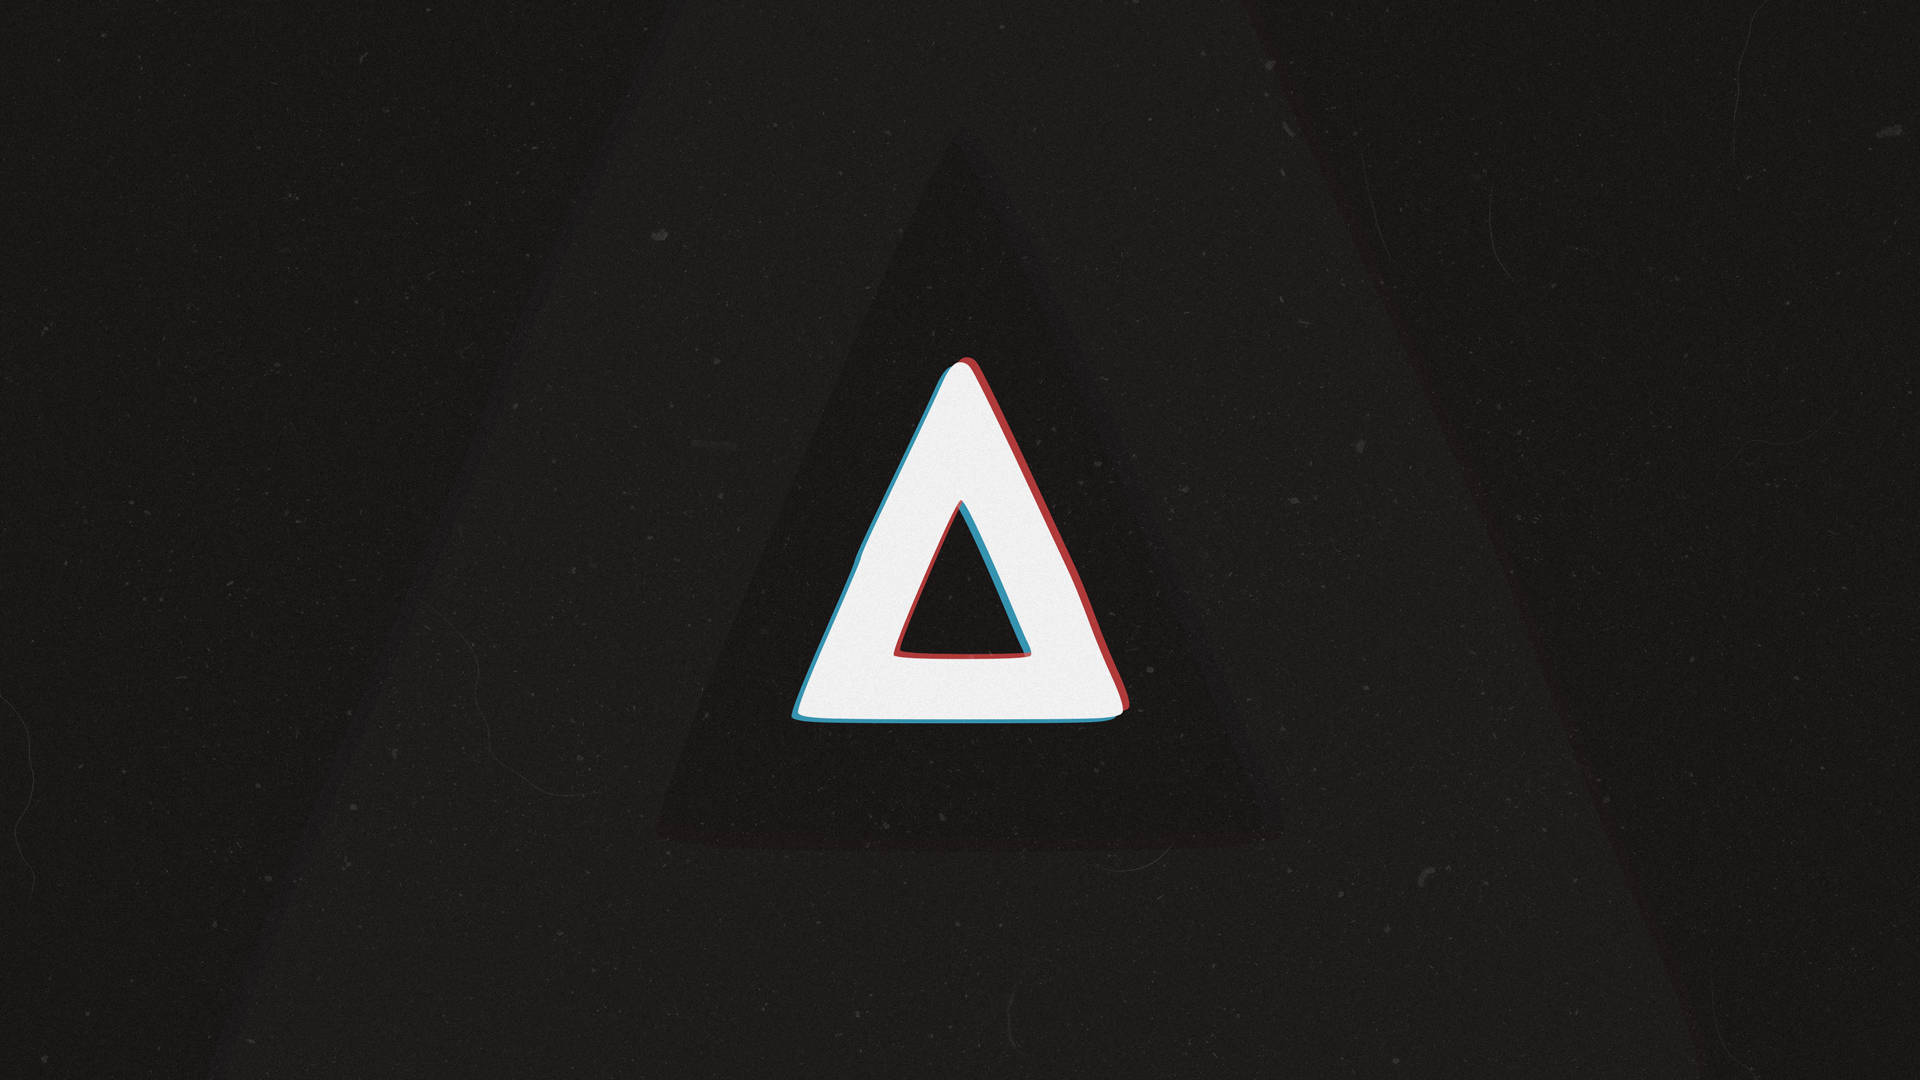 Bastille Band's Iconic Triangle Logo Background